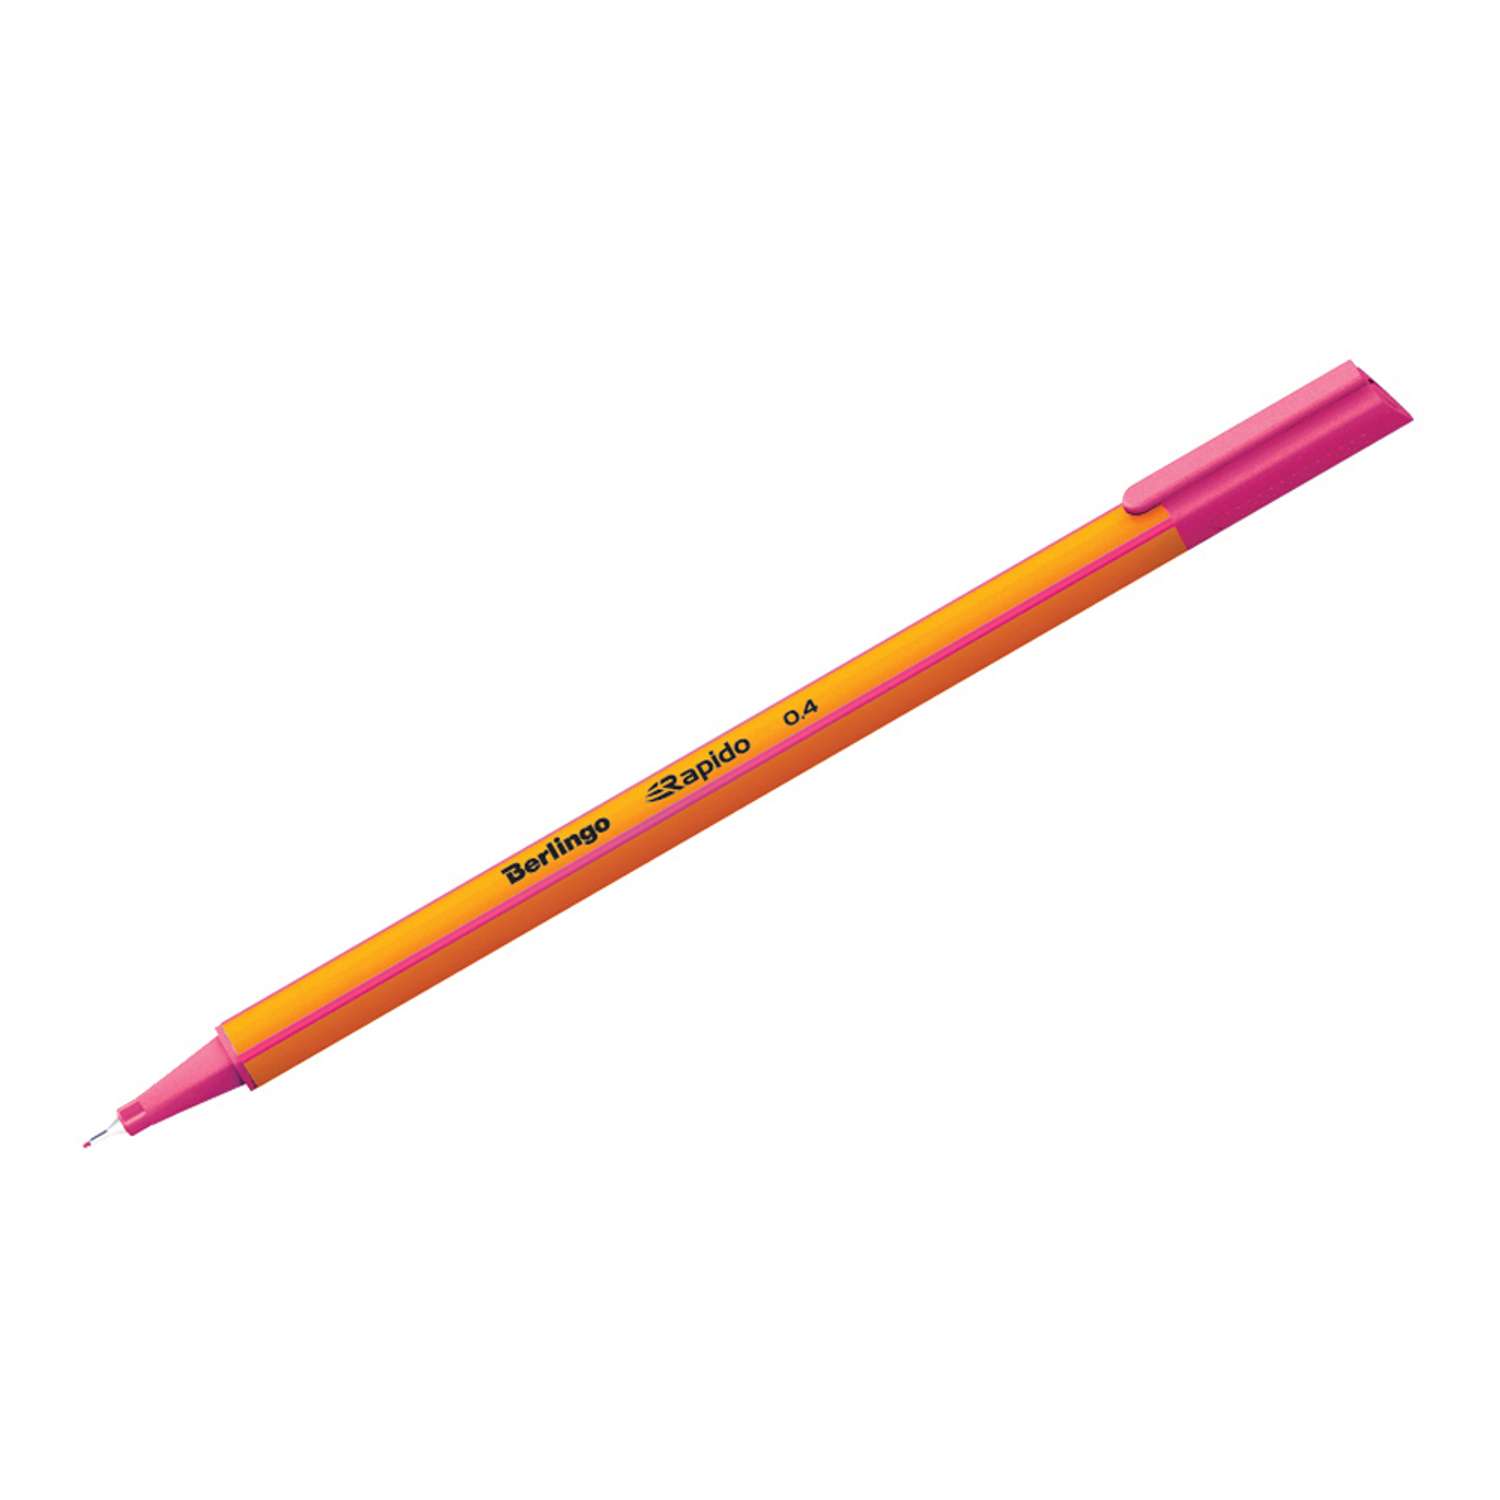 Ручка капиллярная Berlingo Rapido розовая 04мм трехгранная набор 12 шт - фото 1